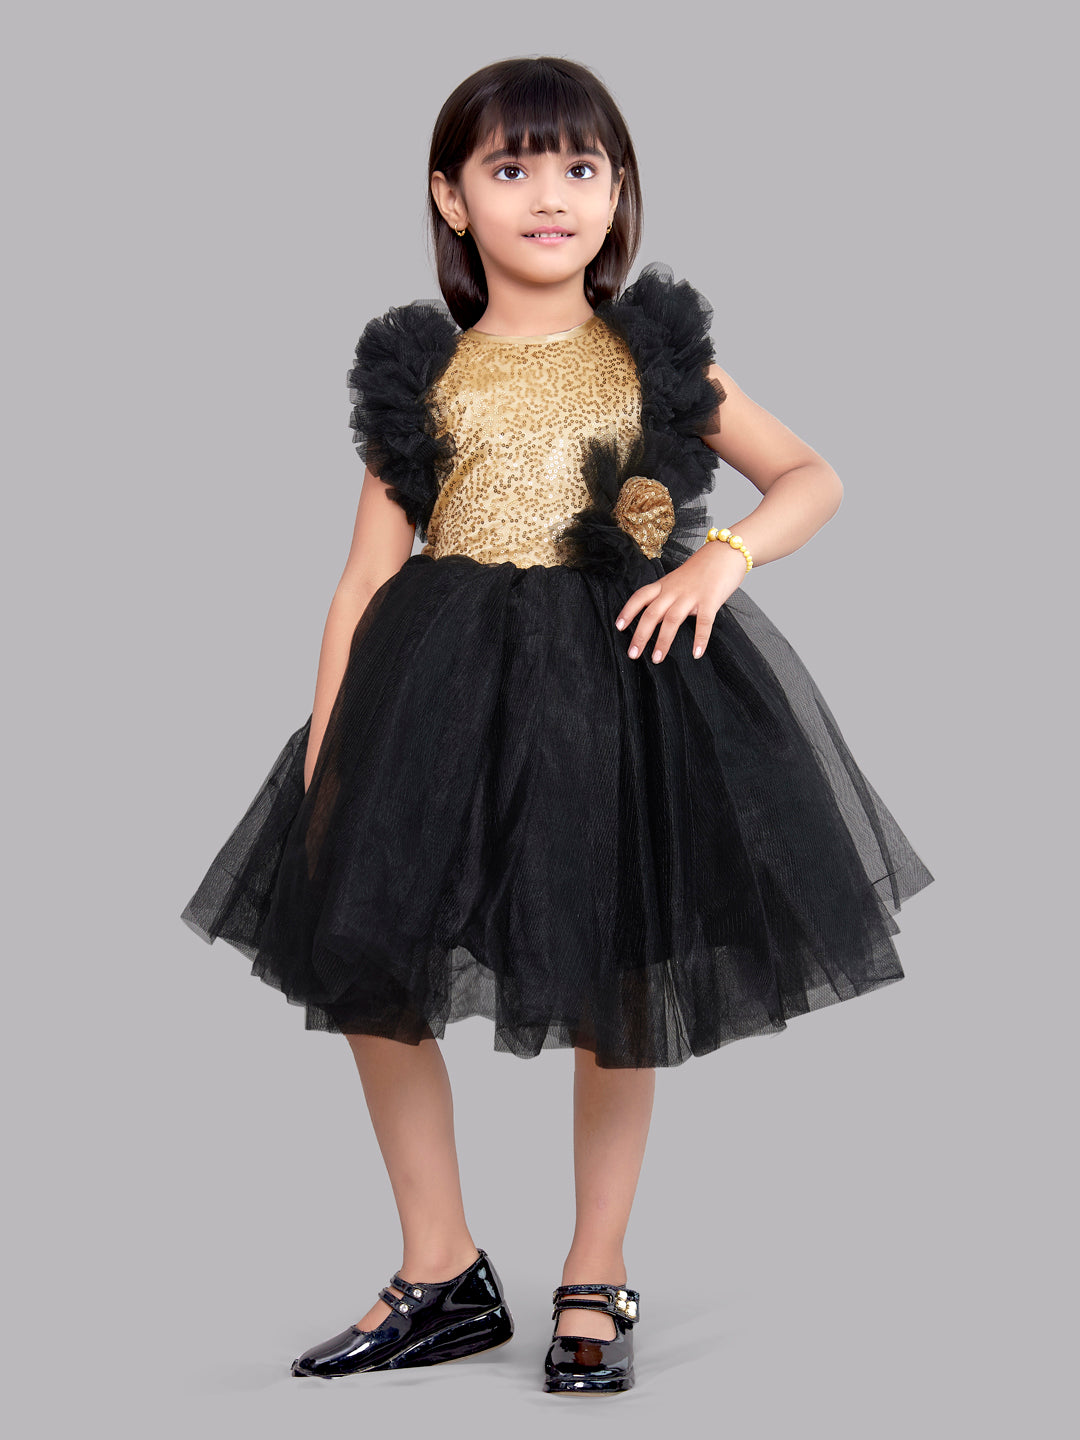 Buy Modern Black Gown Online At Zeel Clothing. | Color: Black